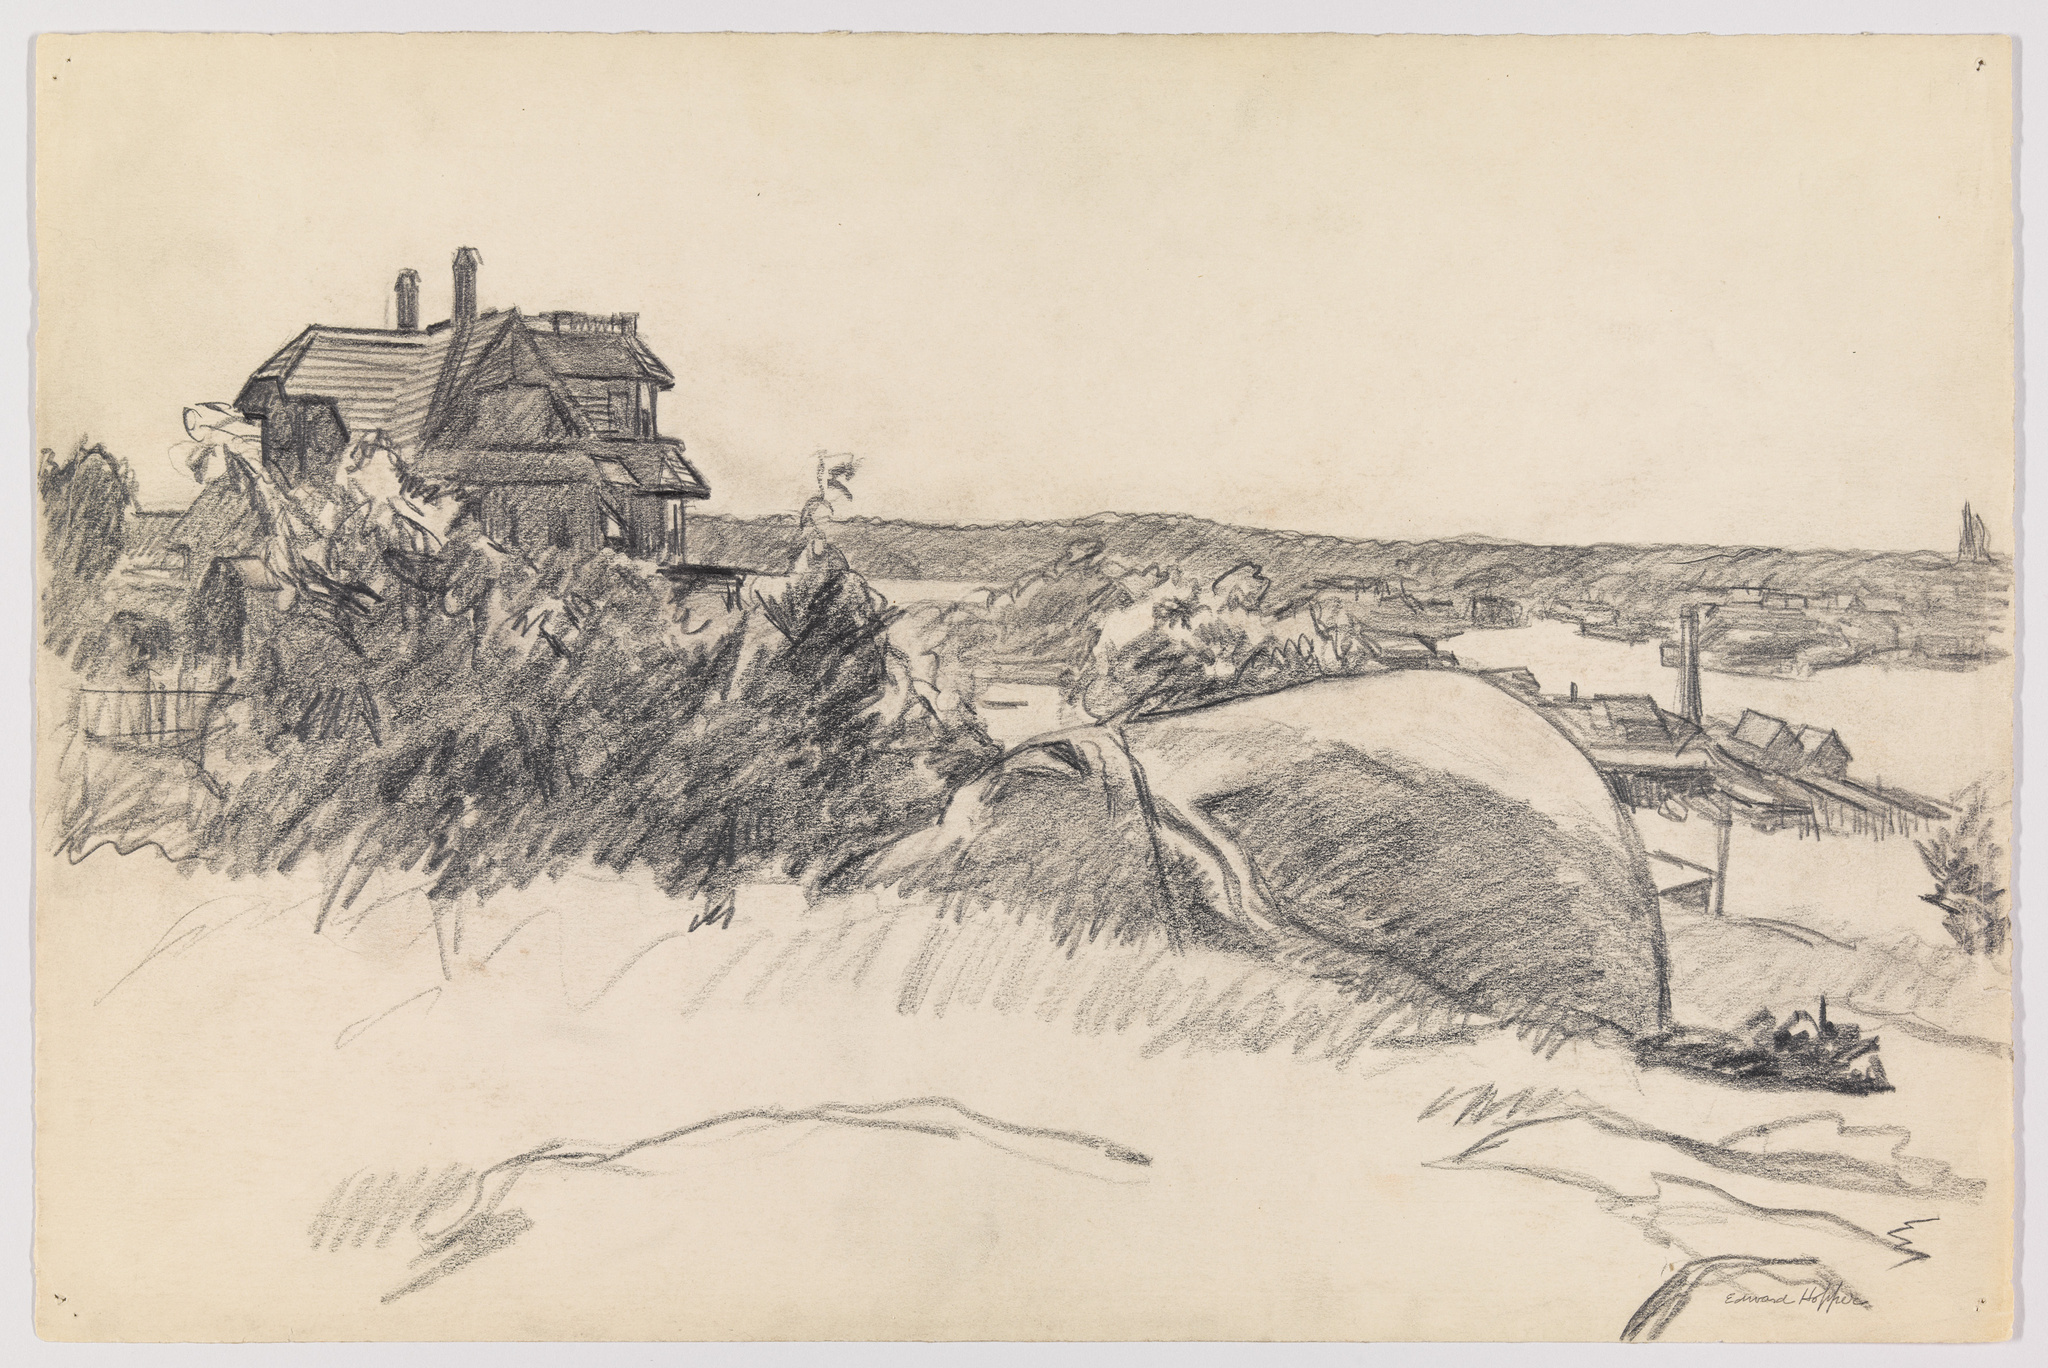 The landscapes of Edward Hopper